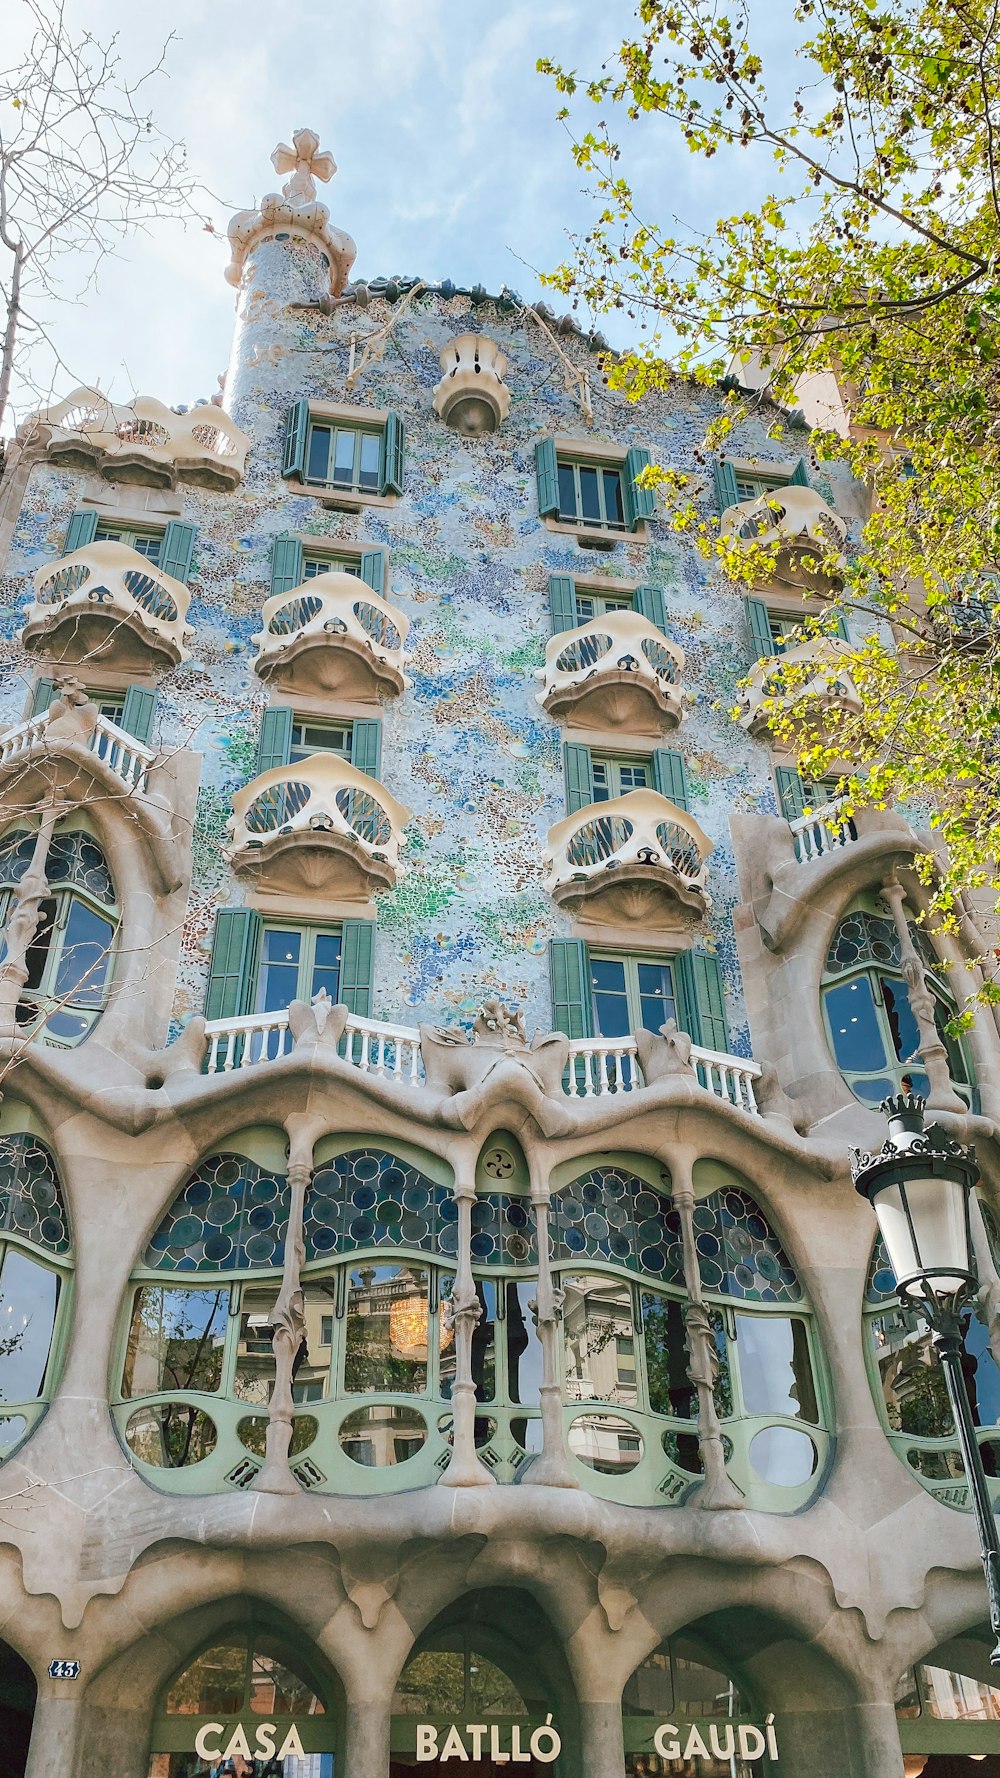 Casa Batlló mit vielen Fenstern